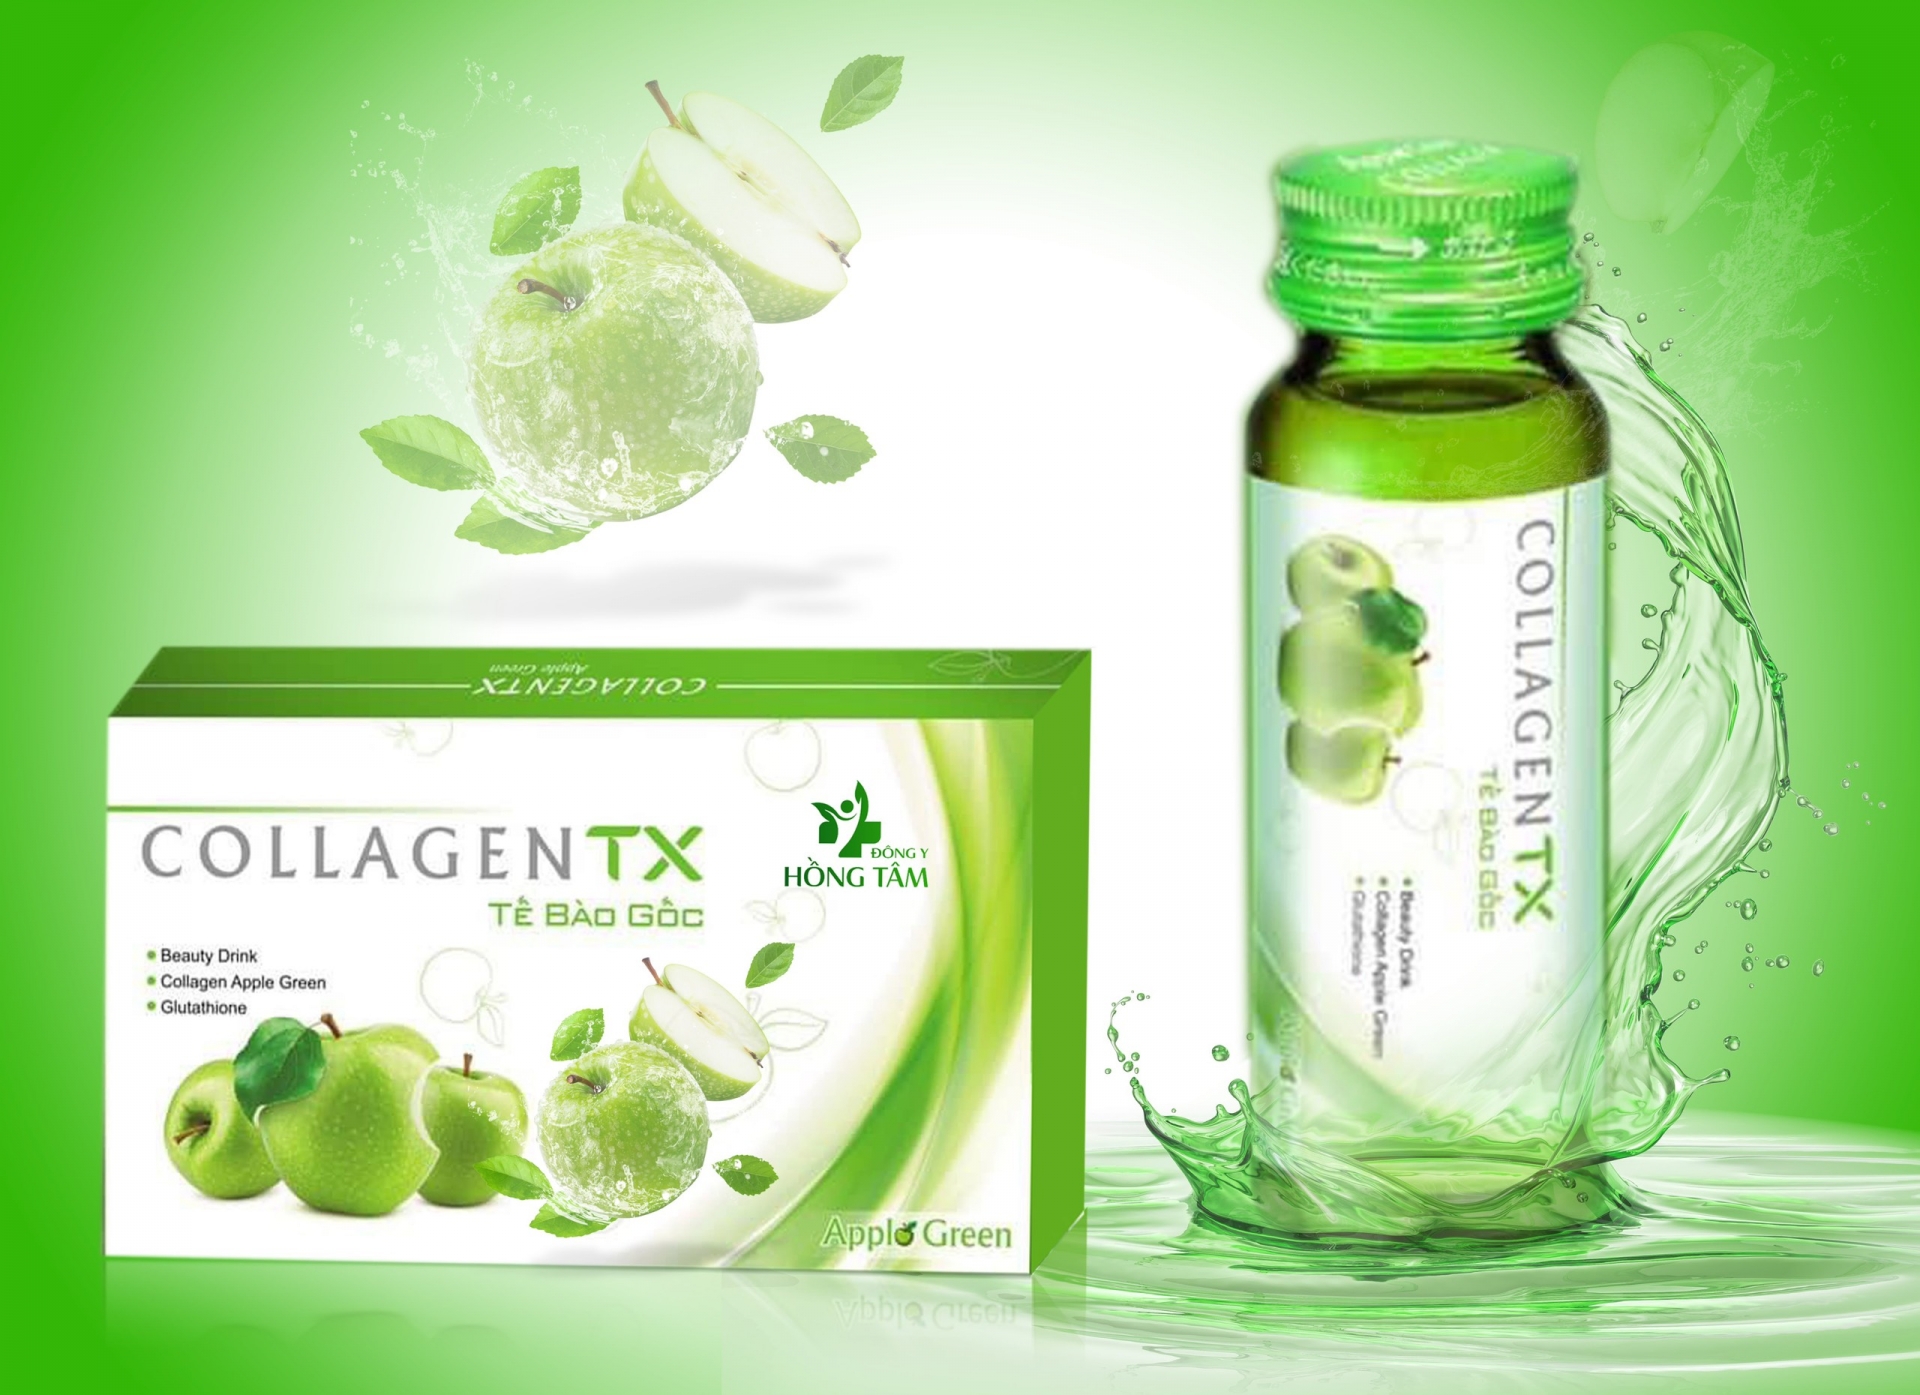 Collagen TX – tế bào gốc: Là sản phẩm được nhập khẩu nguyên liệu từ Nhật Bản; do Công ty Đông Y Hồng Tâm bào chế và phân phối đầu tiên tại nước ta